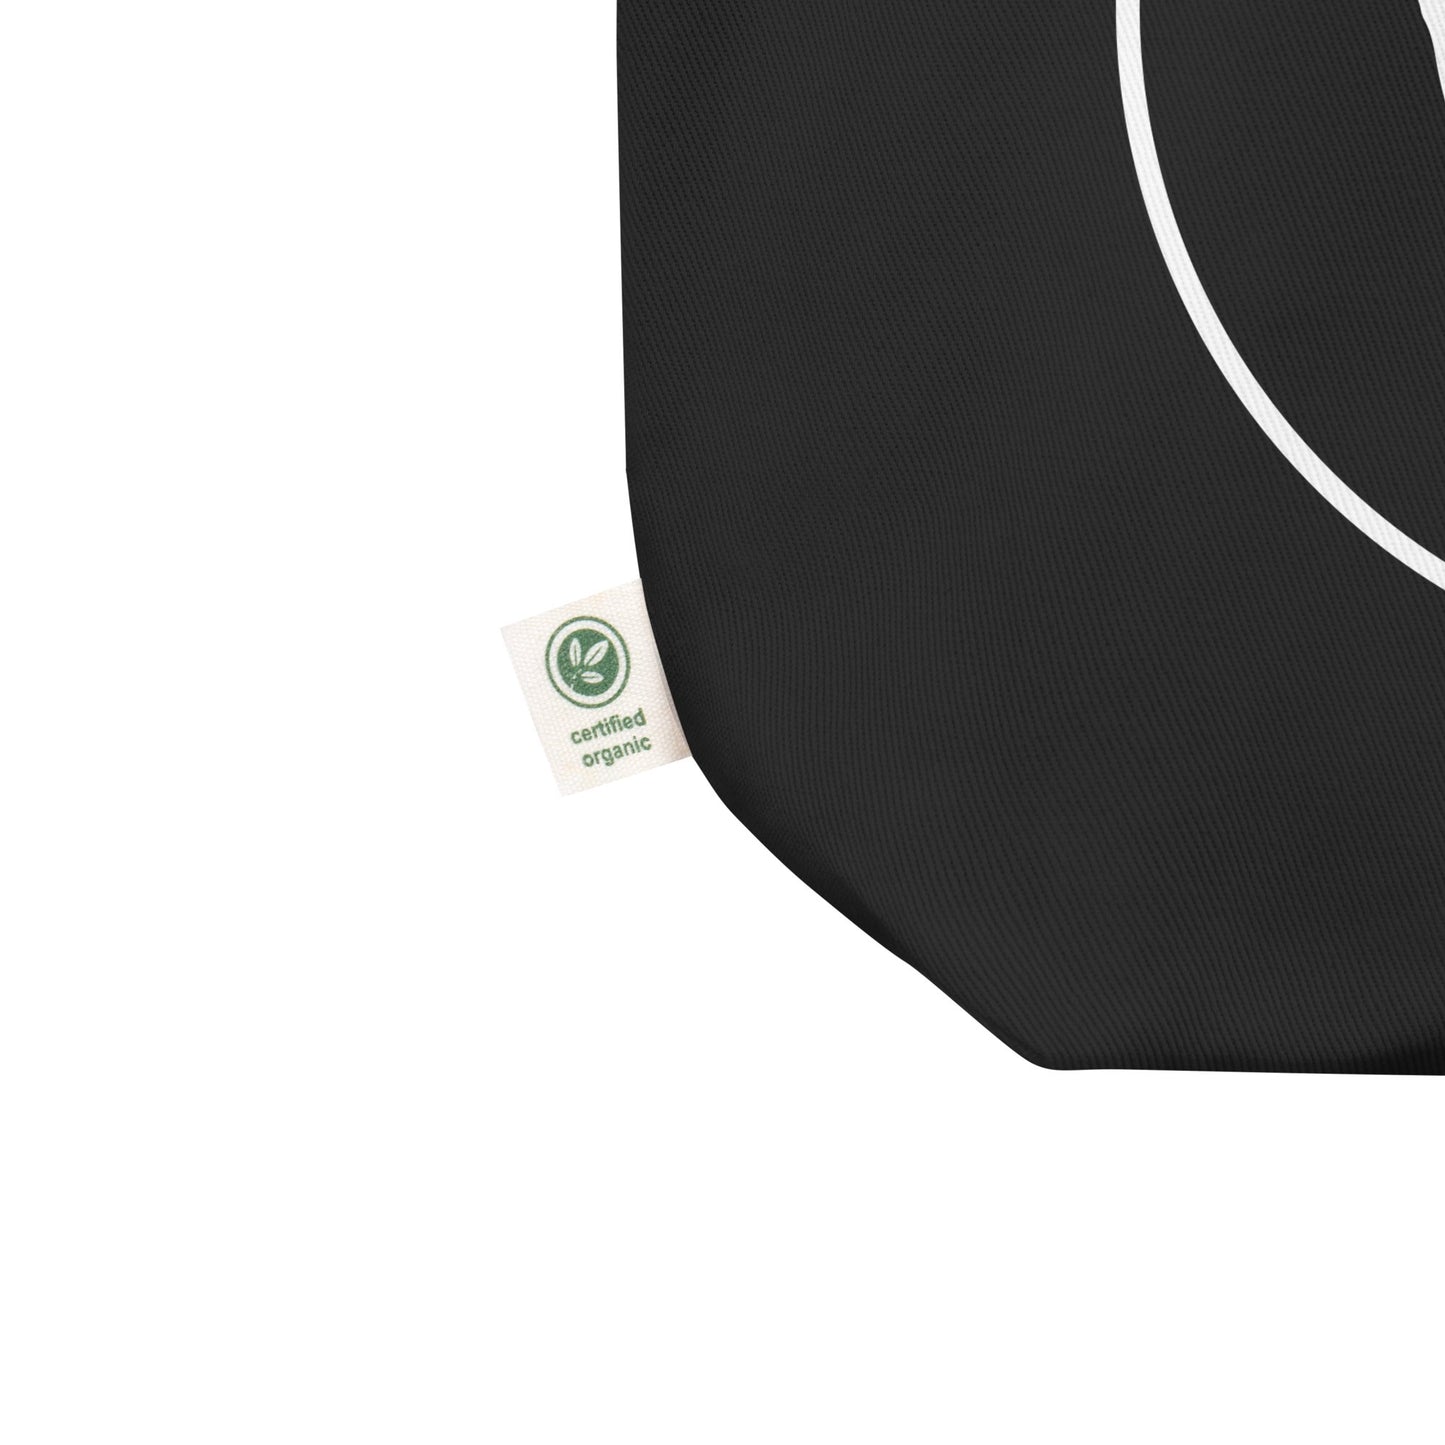 THiNK LiKE A DOG® White Logo on Black Eco Tote Bag - THiNK LiKE A DOG®